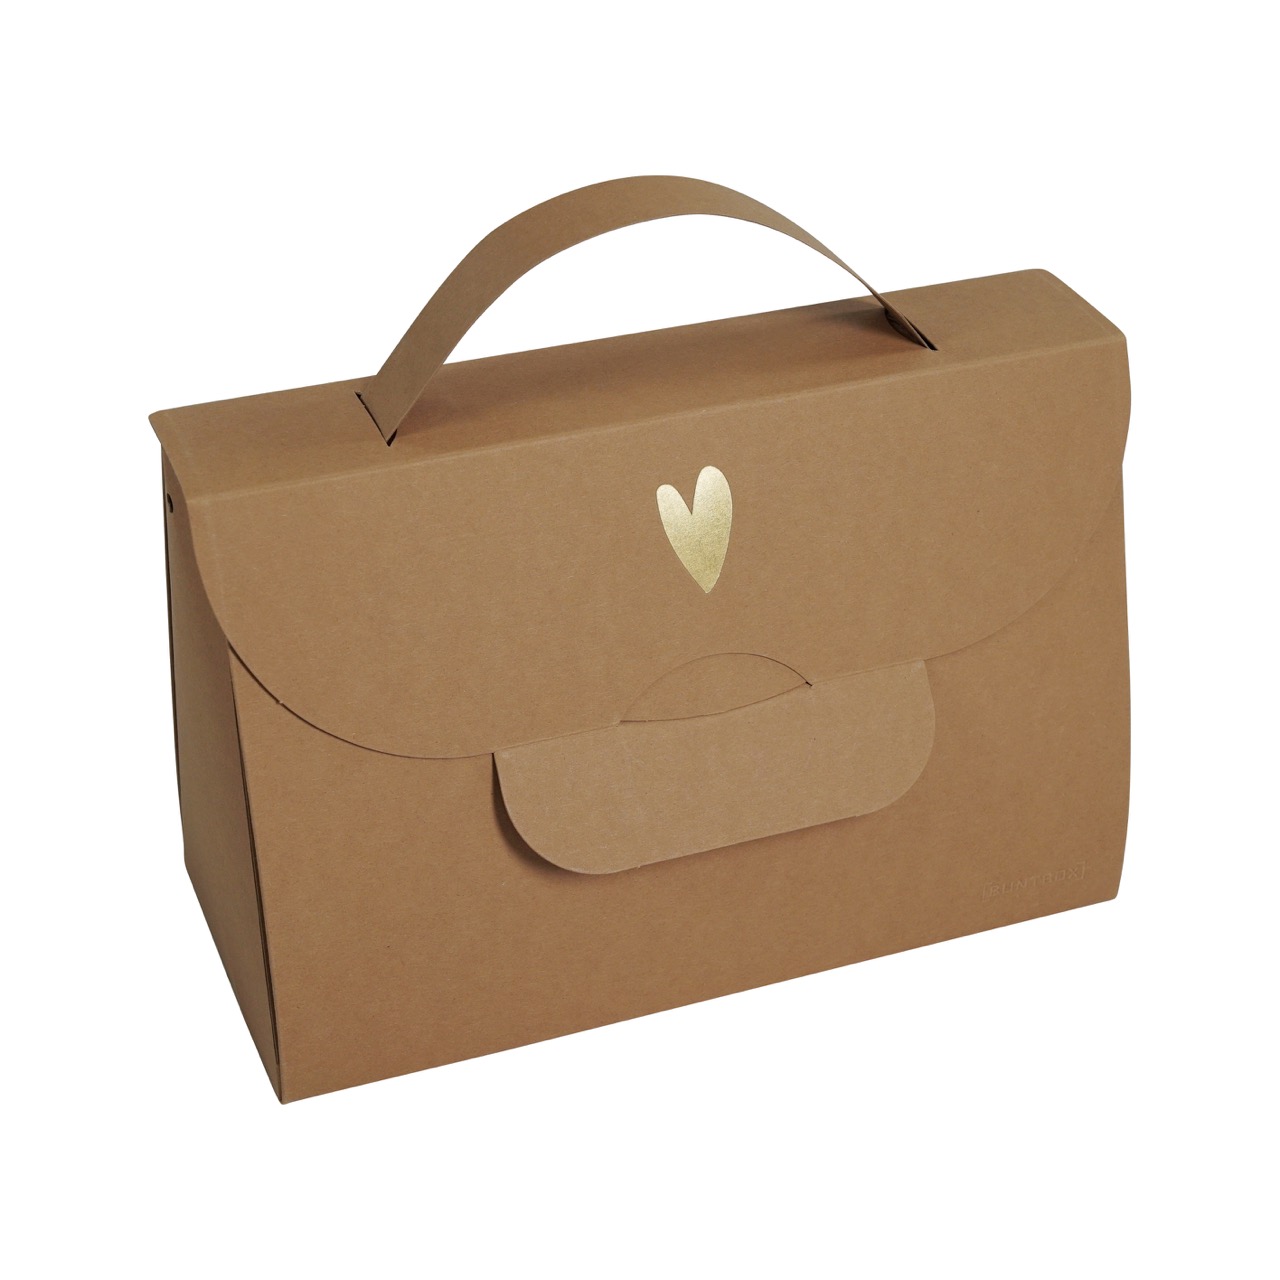 Buntbox Handbag Goldenes Herz